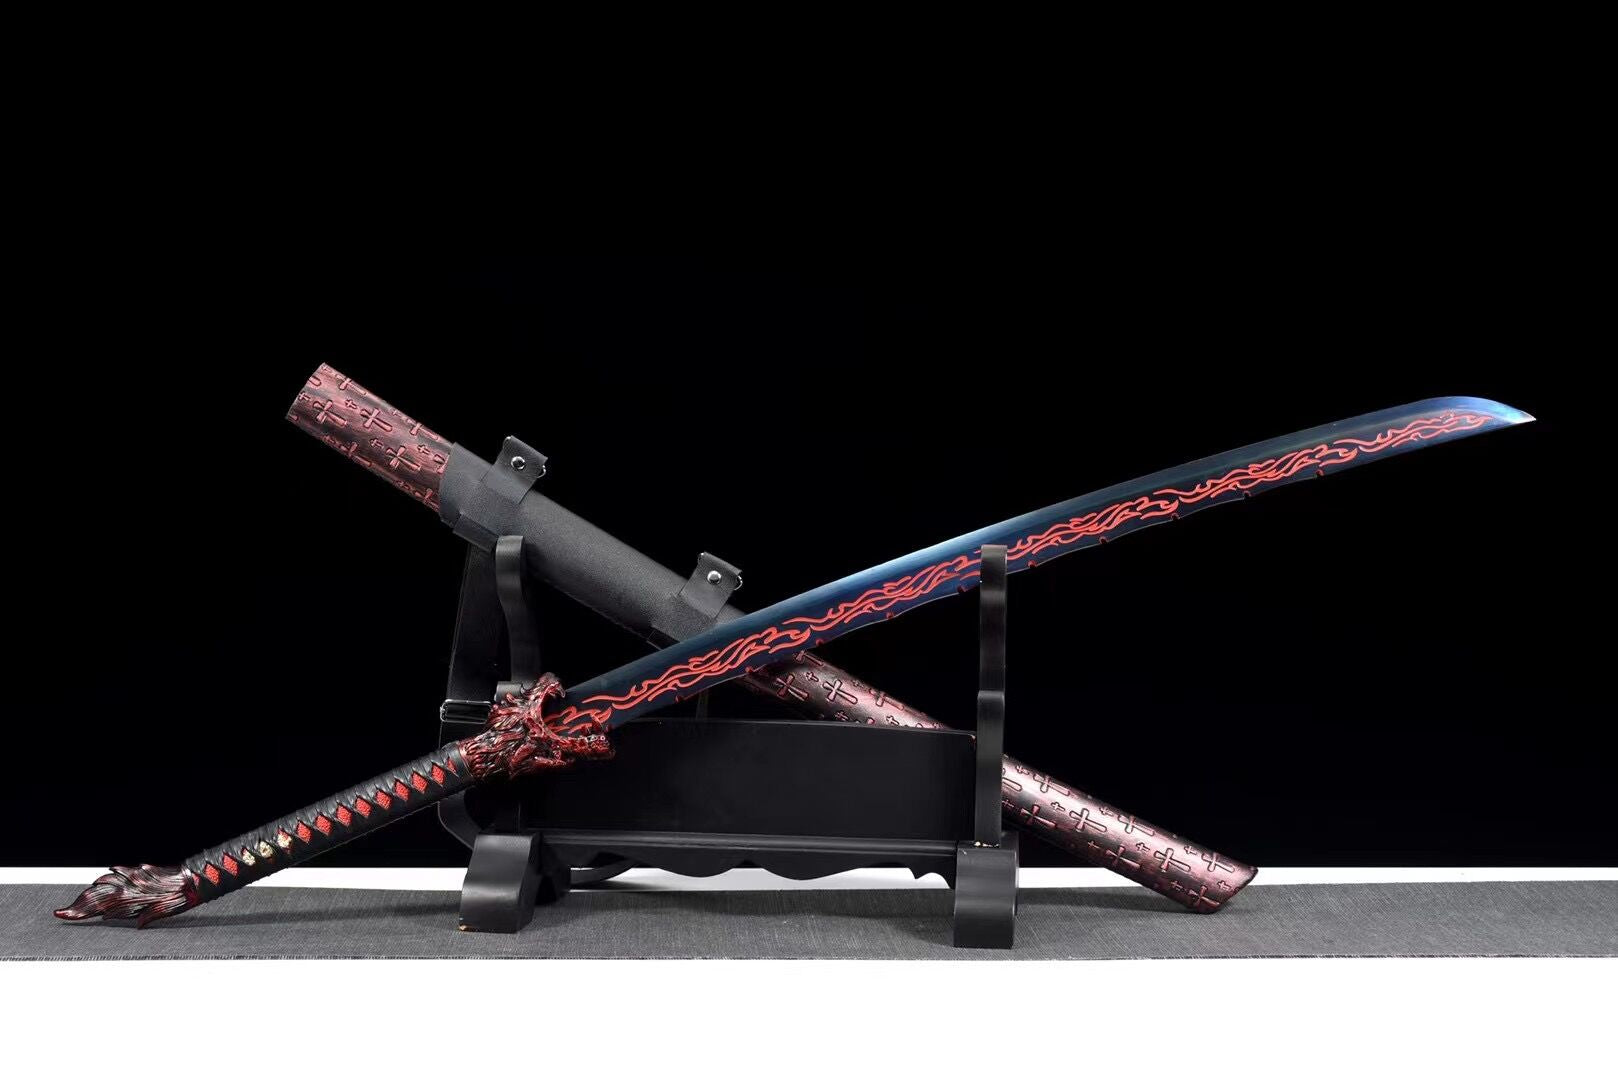 Red Flame Wolf Schwert, Kunsthandwerk, chinesischer Säbel, echtes Schwert, handgefertigtes chinesisches Schwert, Hochmanganstahl, Longquan-Schwert